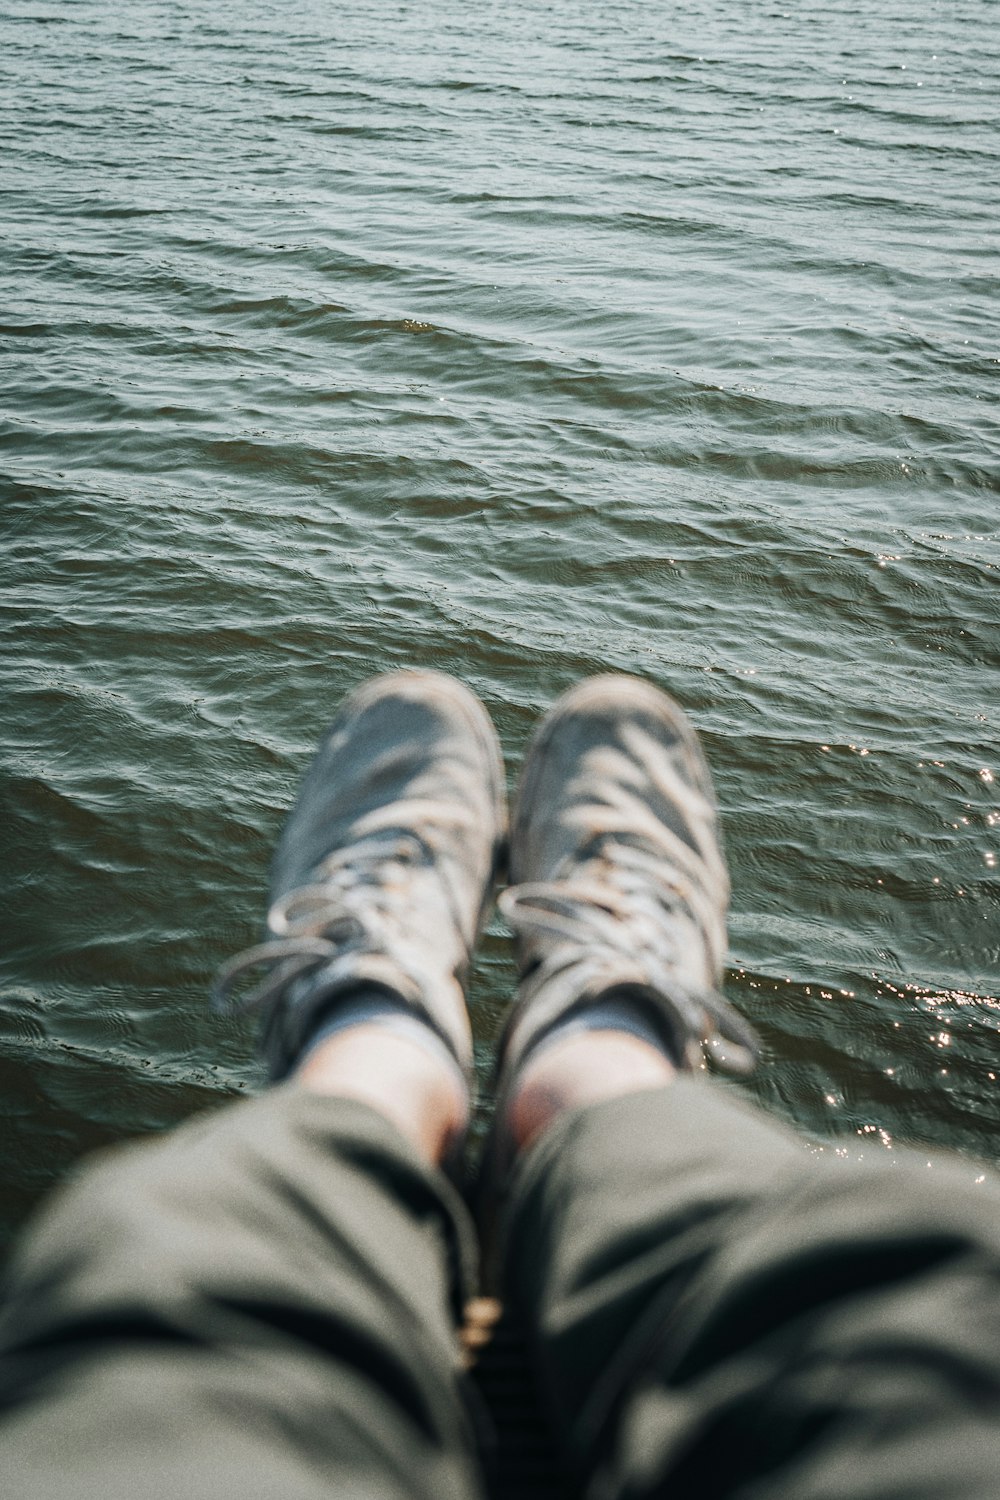 I piedi di una persona nell'acqua con una barca sullo sfondo